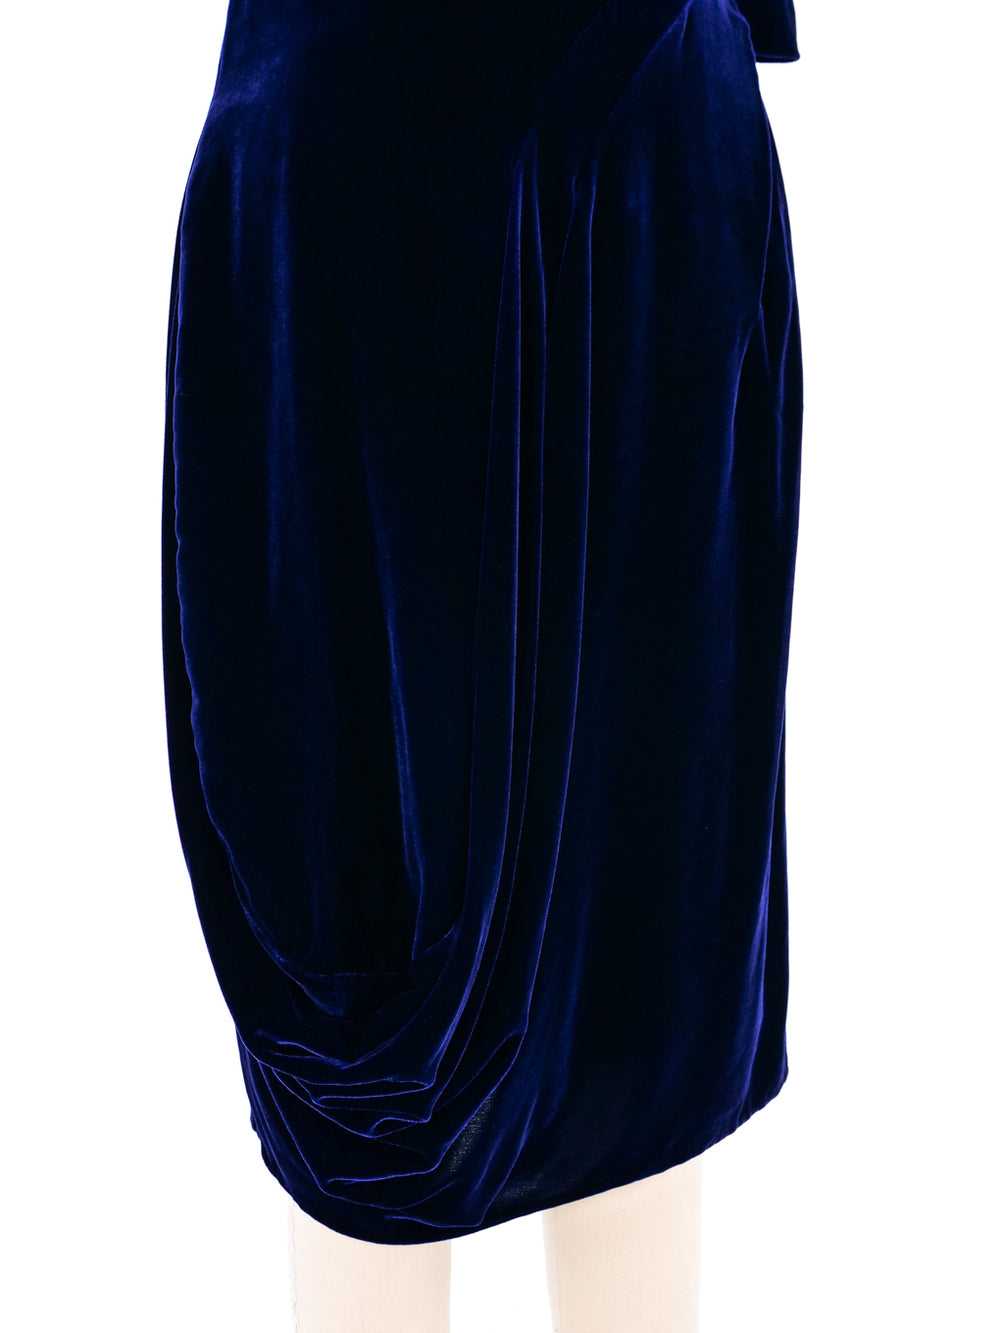 Alexander McQueen Draped Velvet Dress - image 4